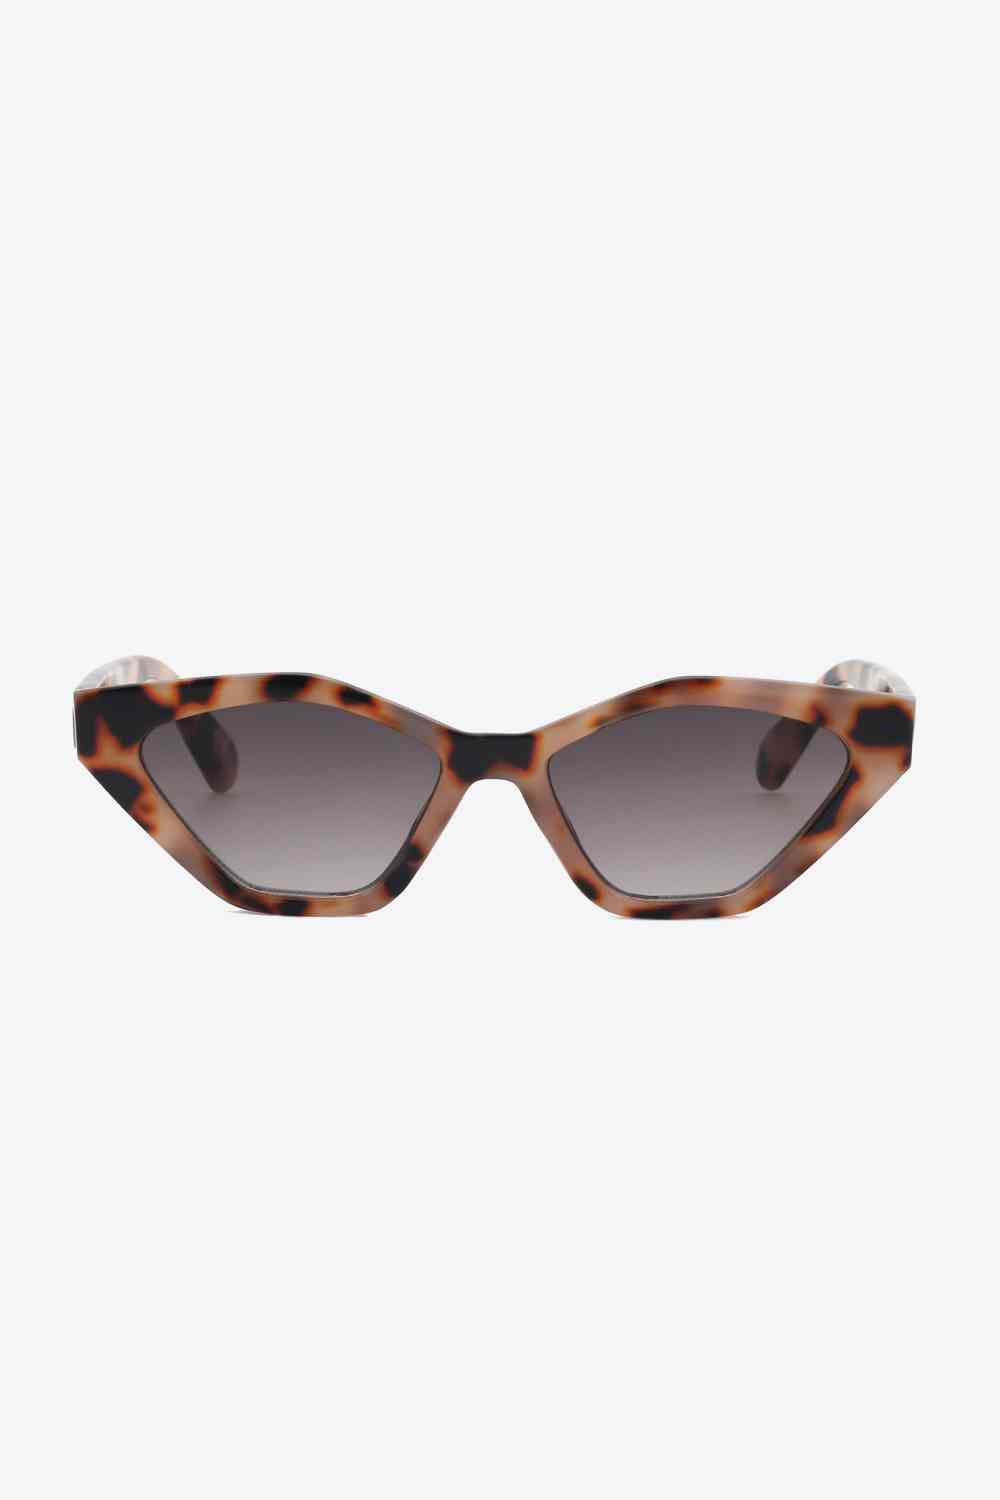 TEEK - Cat Eye Poly Sunglasses EYEGLASSES TEEK Trend   